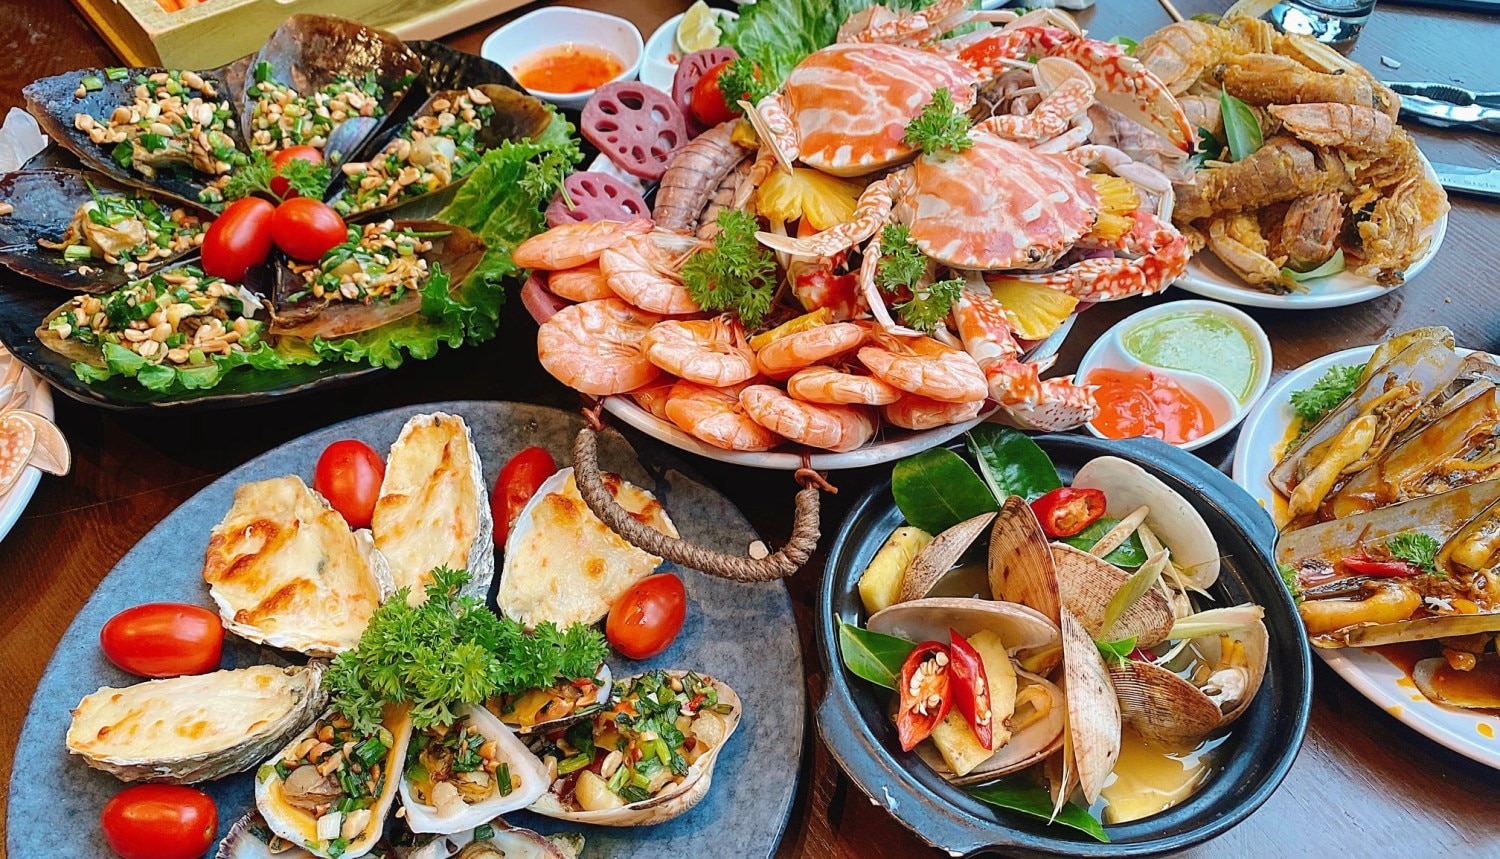 Bay Seafood Buffet - Hồ Gươm ở Quận Hoàn Kiếm, Hà Nội | Foody.vn